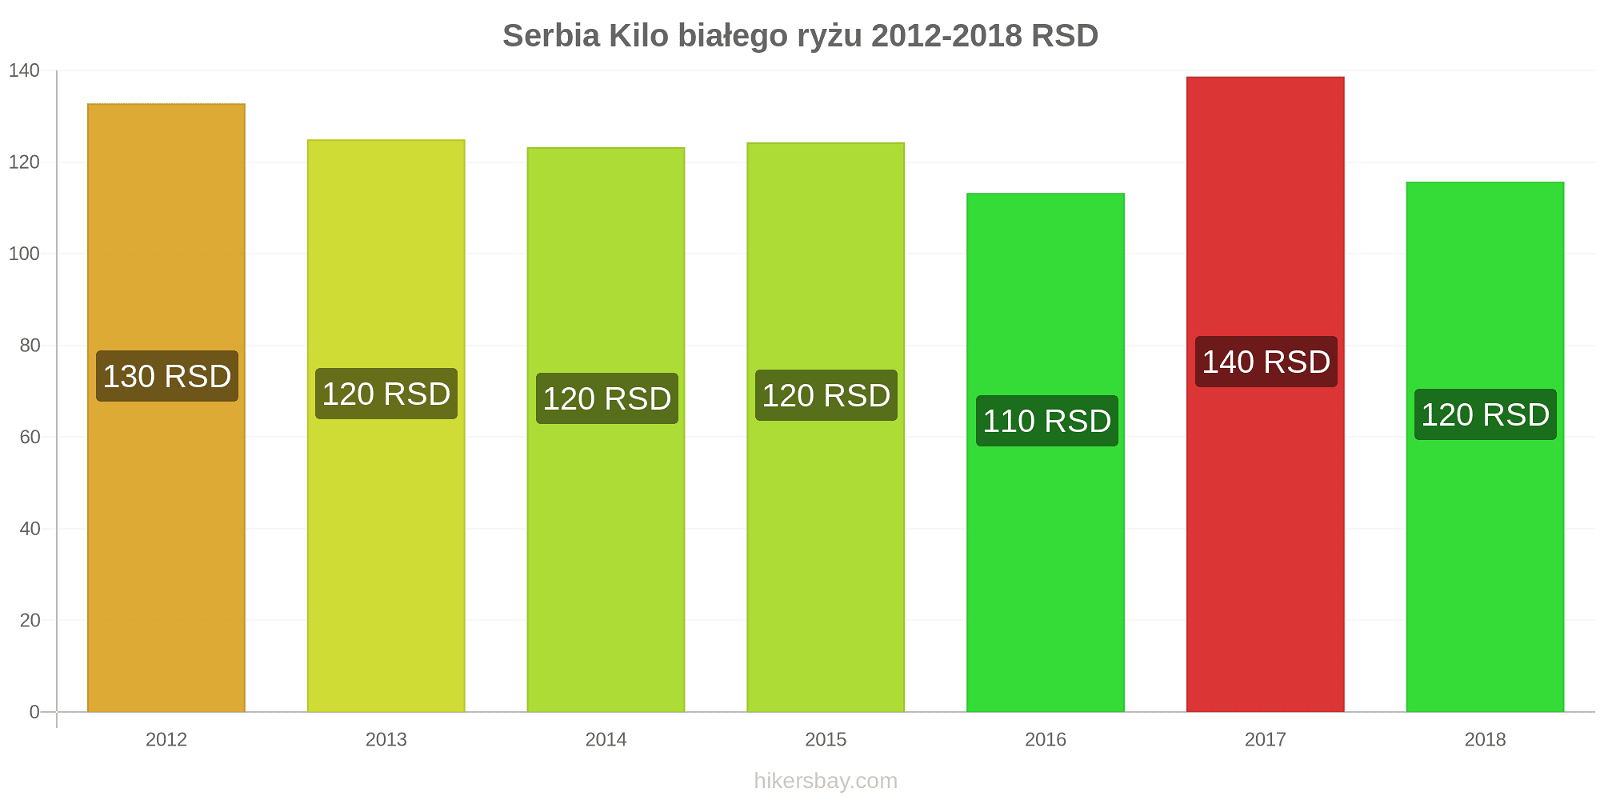 Serbia zmiany cen Kilo białego ryżu hikersbay.com